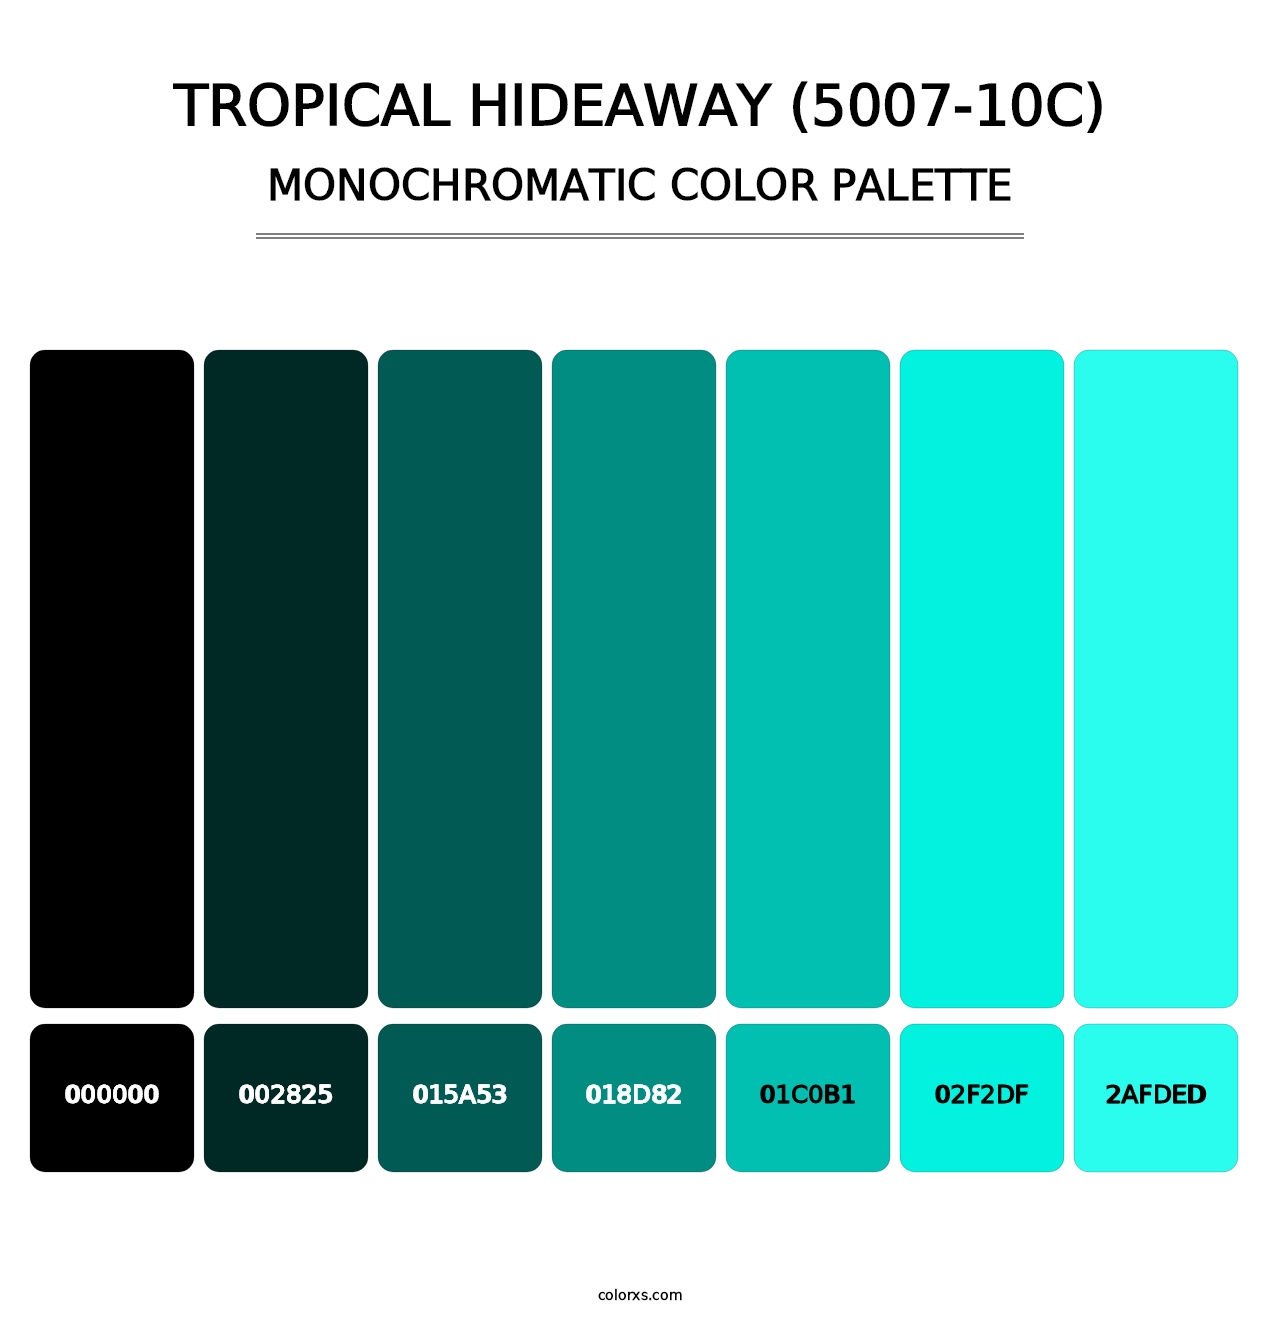 Tropical Hideaway (5007-10C) - Monochromatic Color Palette